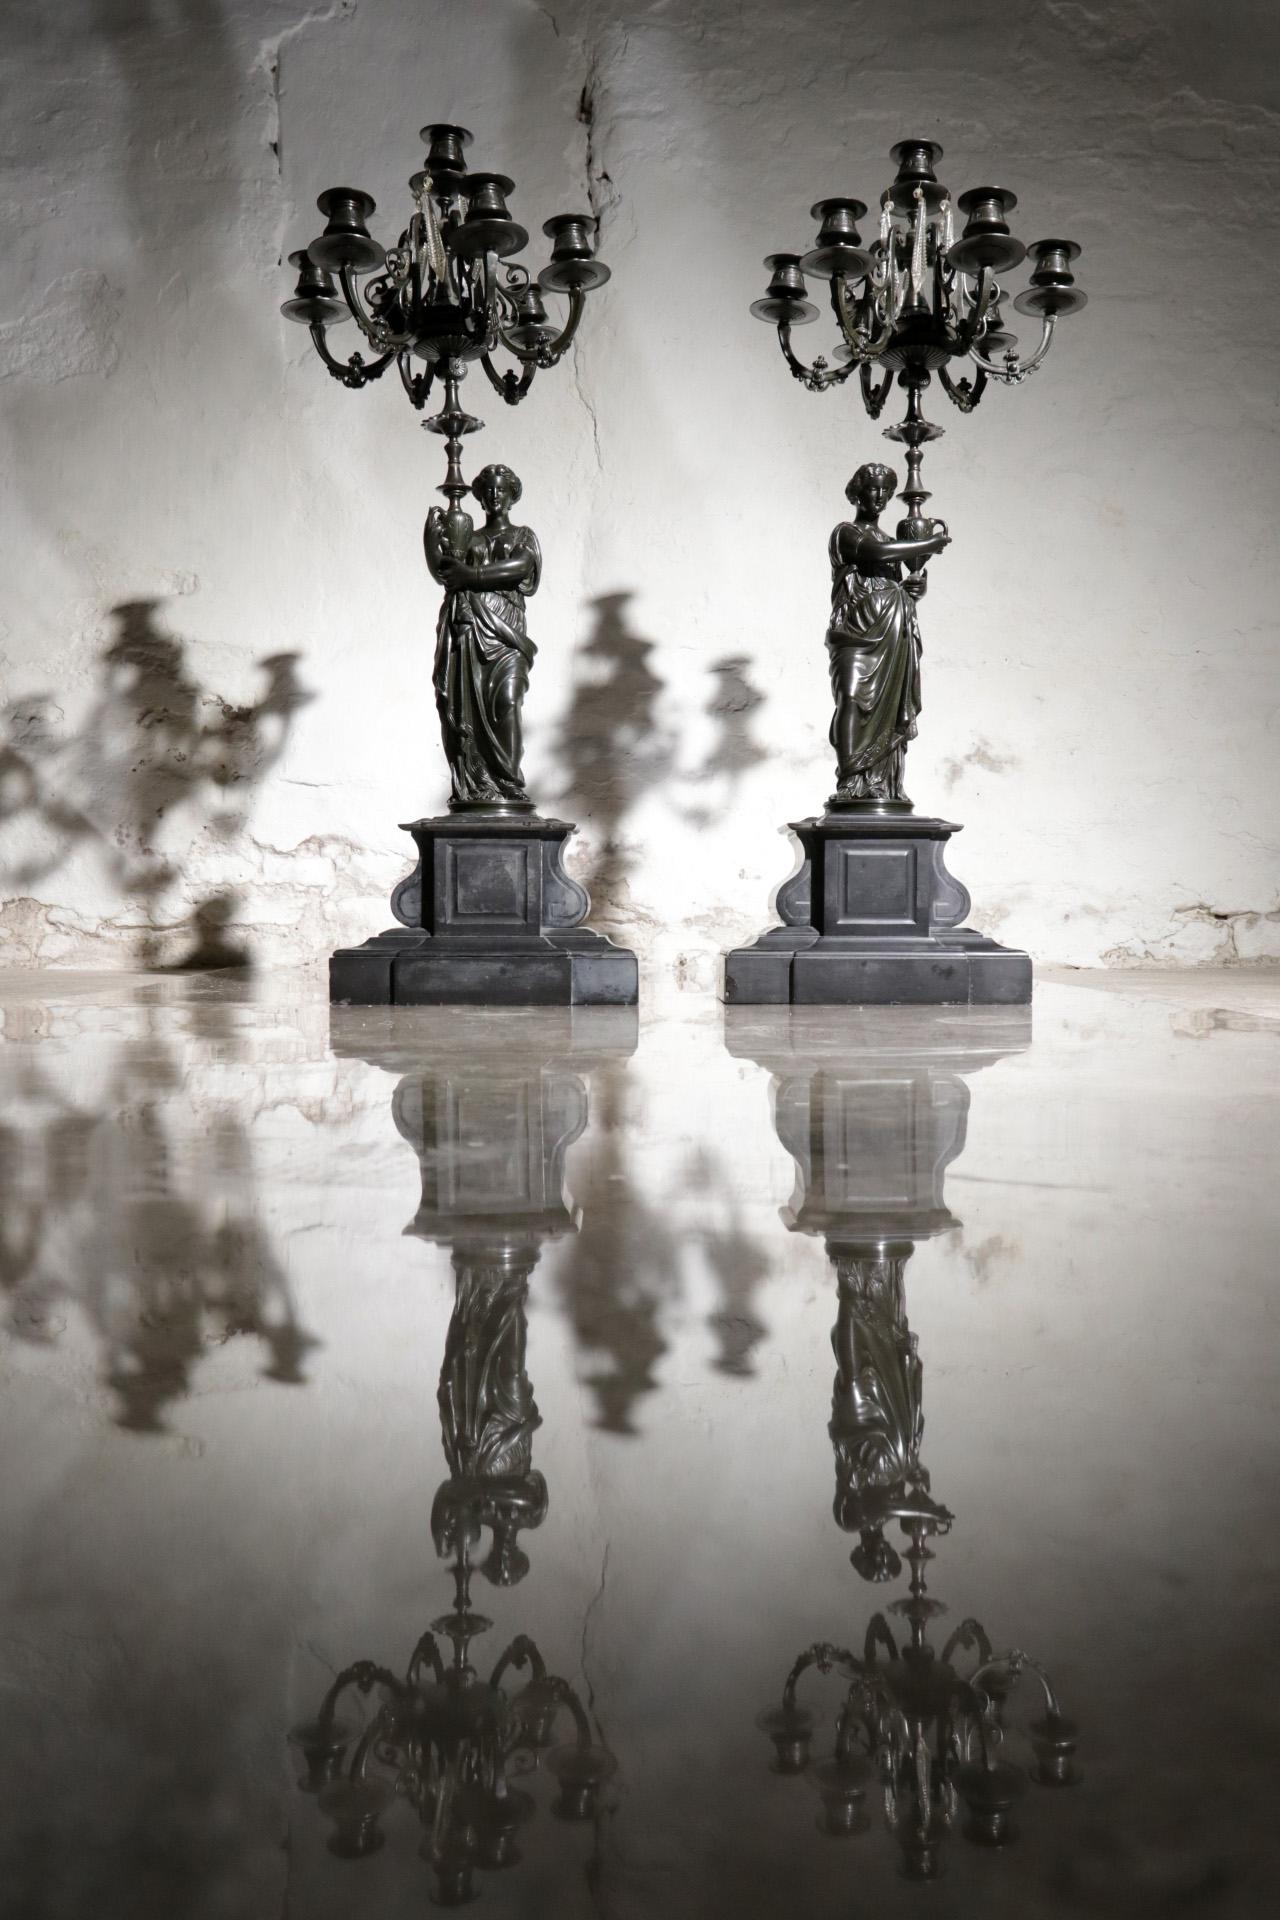 Sehr dekoratives, großes (fast 80 cm hohes) Paar Frankreich-Kandelaber aus dem 19. Jahrhundert.
Hergestellt aus patinierter Bronze und auf einem Marmorsockel stehend.
Sehr detaillierte Zahlen. Einige Kristalle hängen in den Kerzenständern und